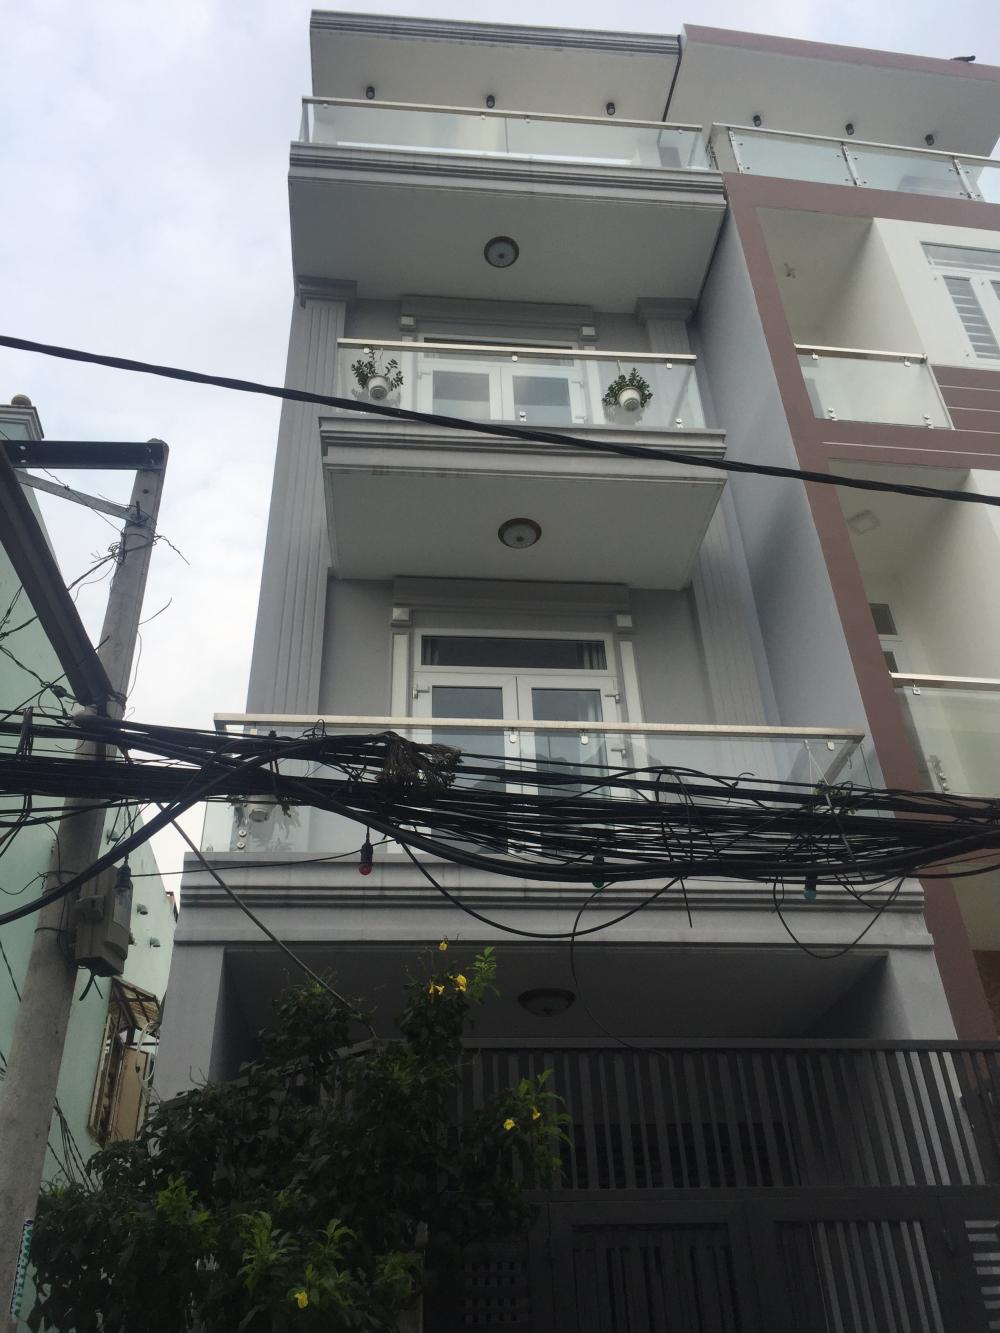 Bán nhà đẹp 95m2 Phan Văn Trị, P. 11, quận Bình Thạnh, giá 7.9 tỷ. Liên hệ: 0903074322